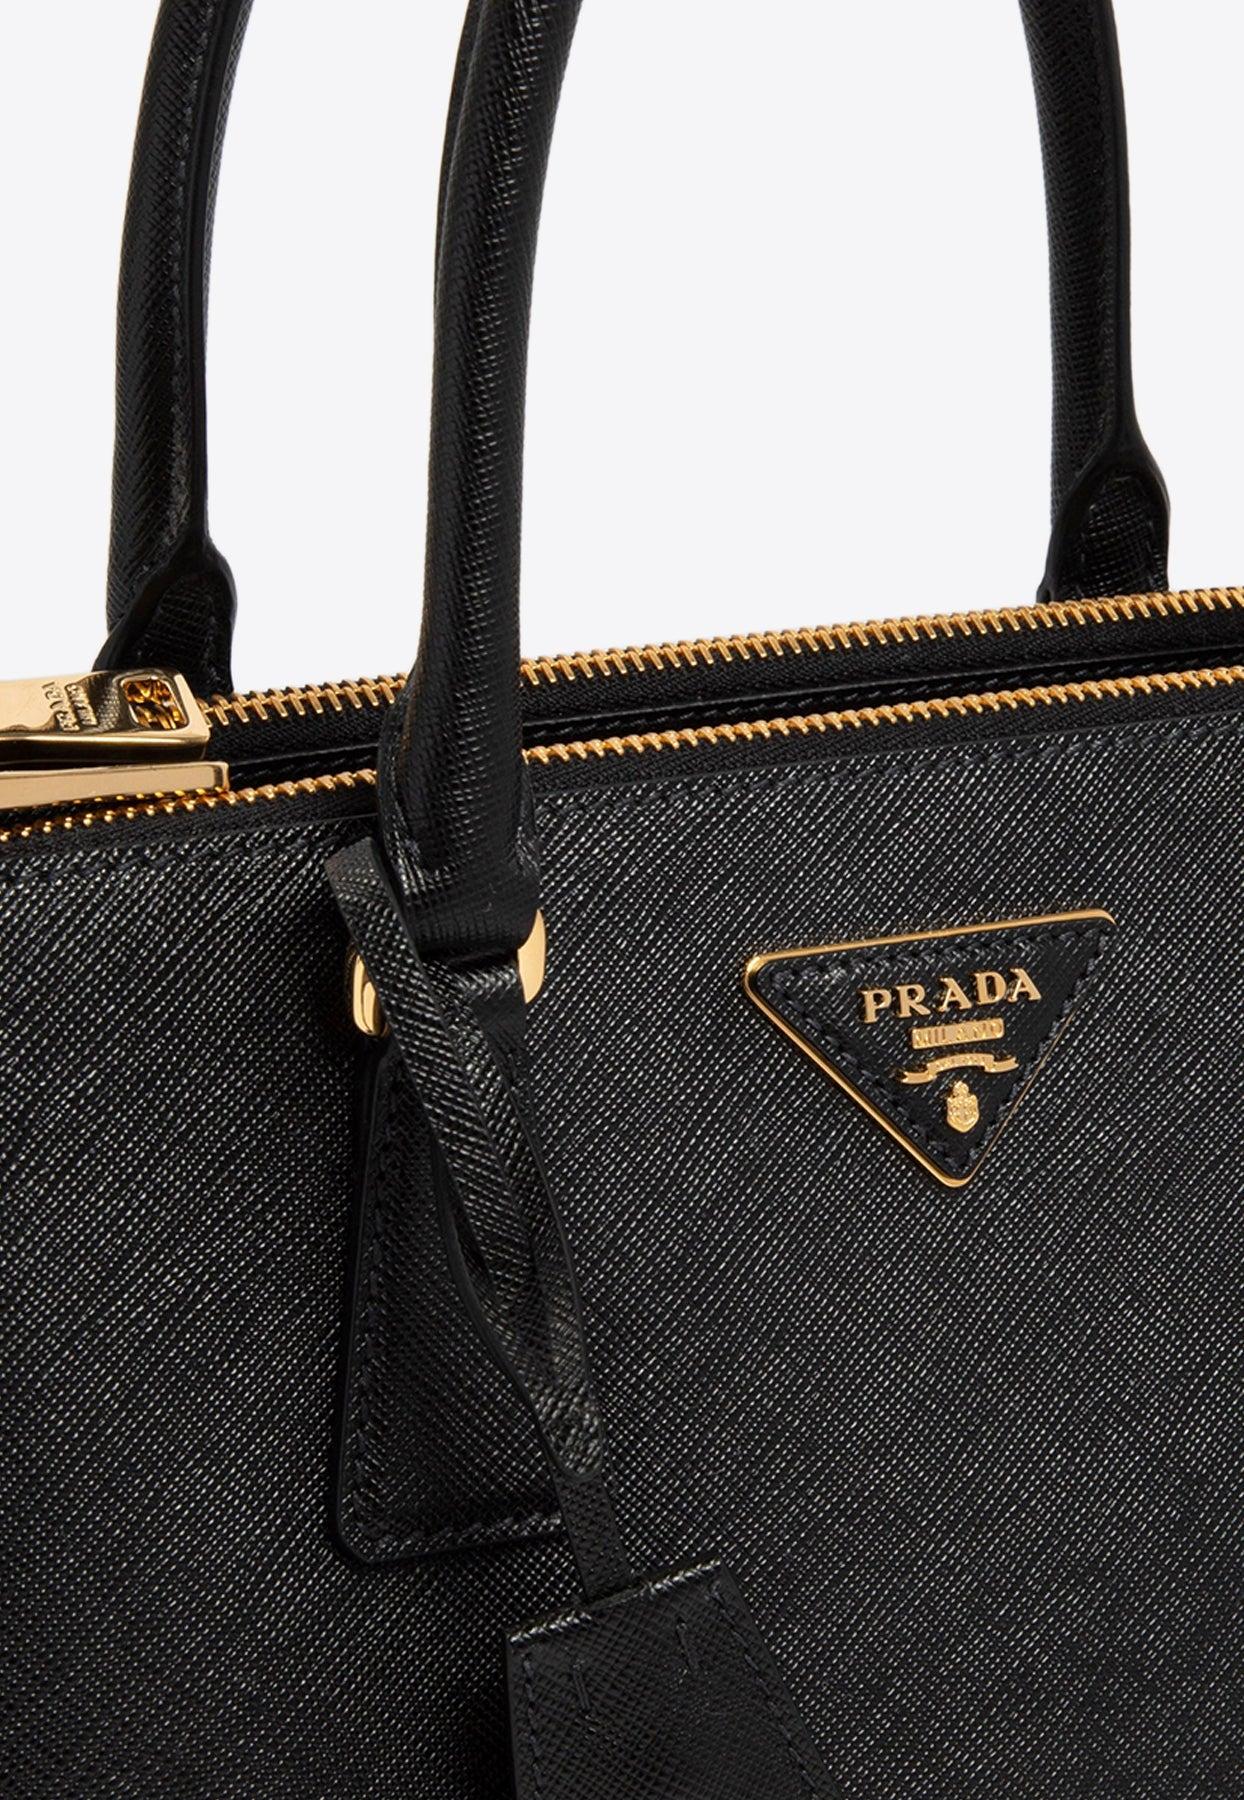 Prada Medium Galleria Top Handle Bag In Saffiano Leather in Black